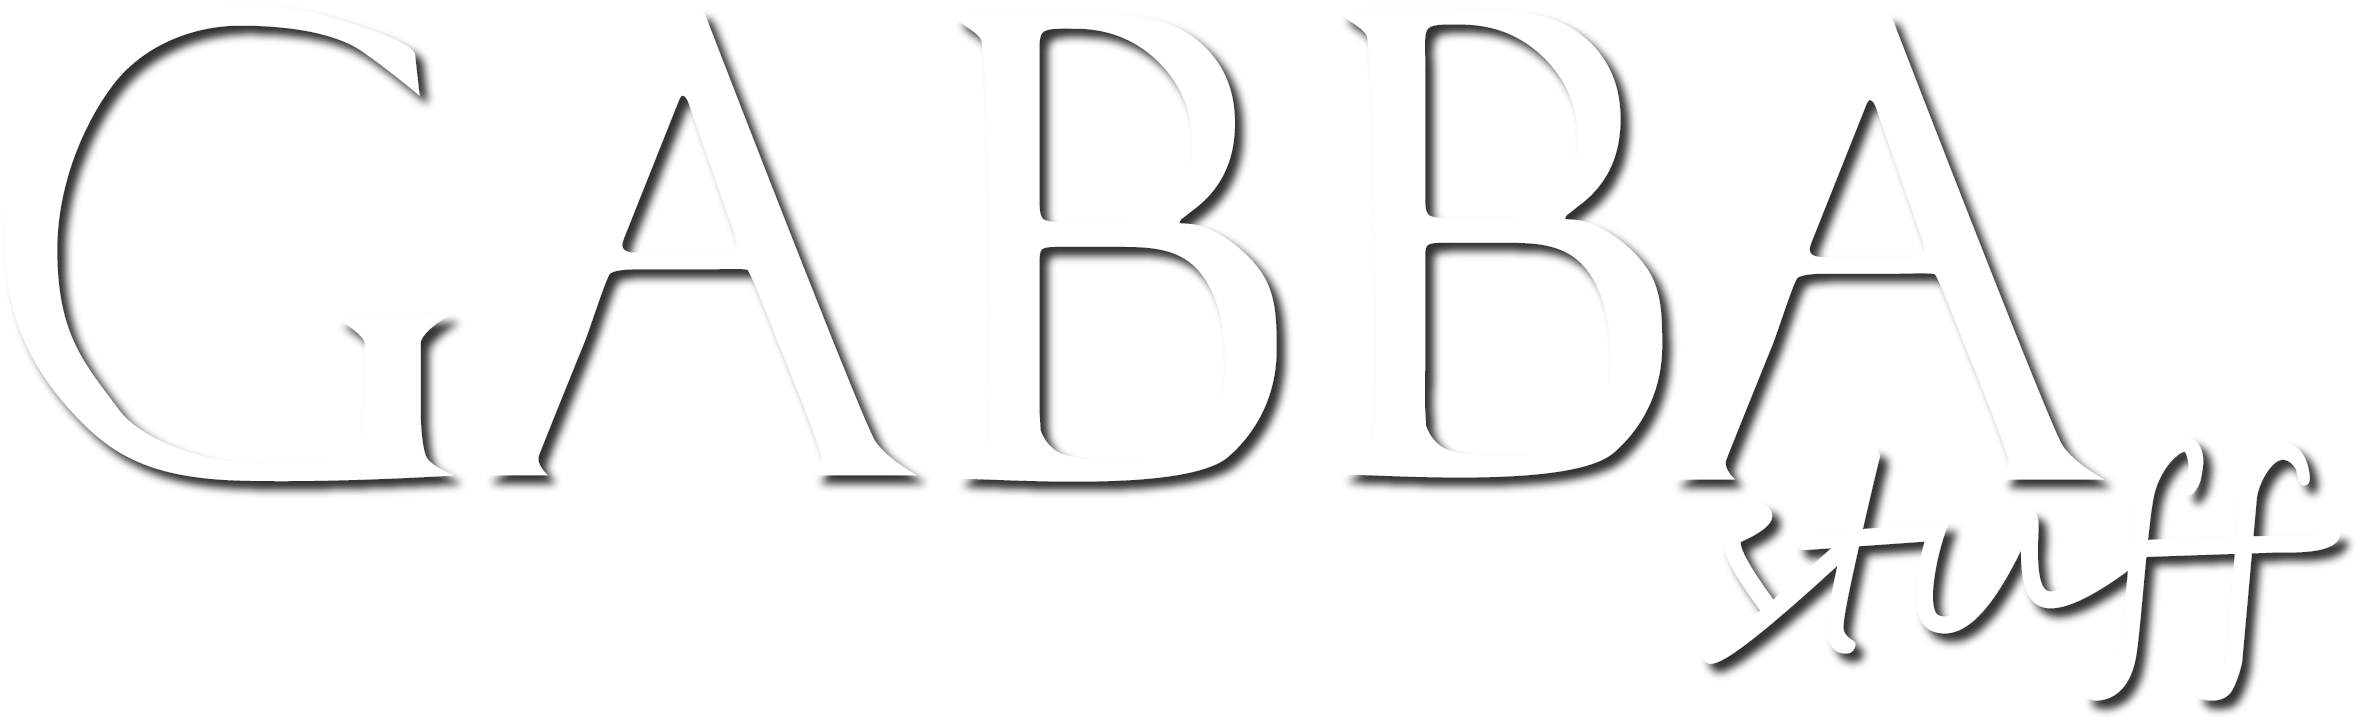 Gabba Stuff logo